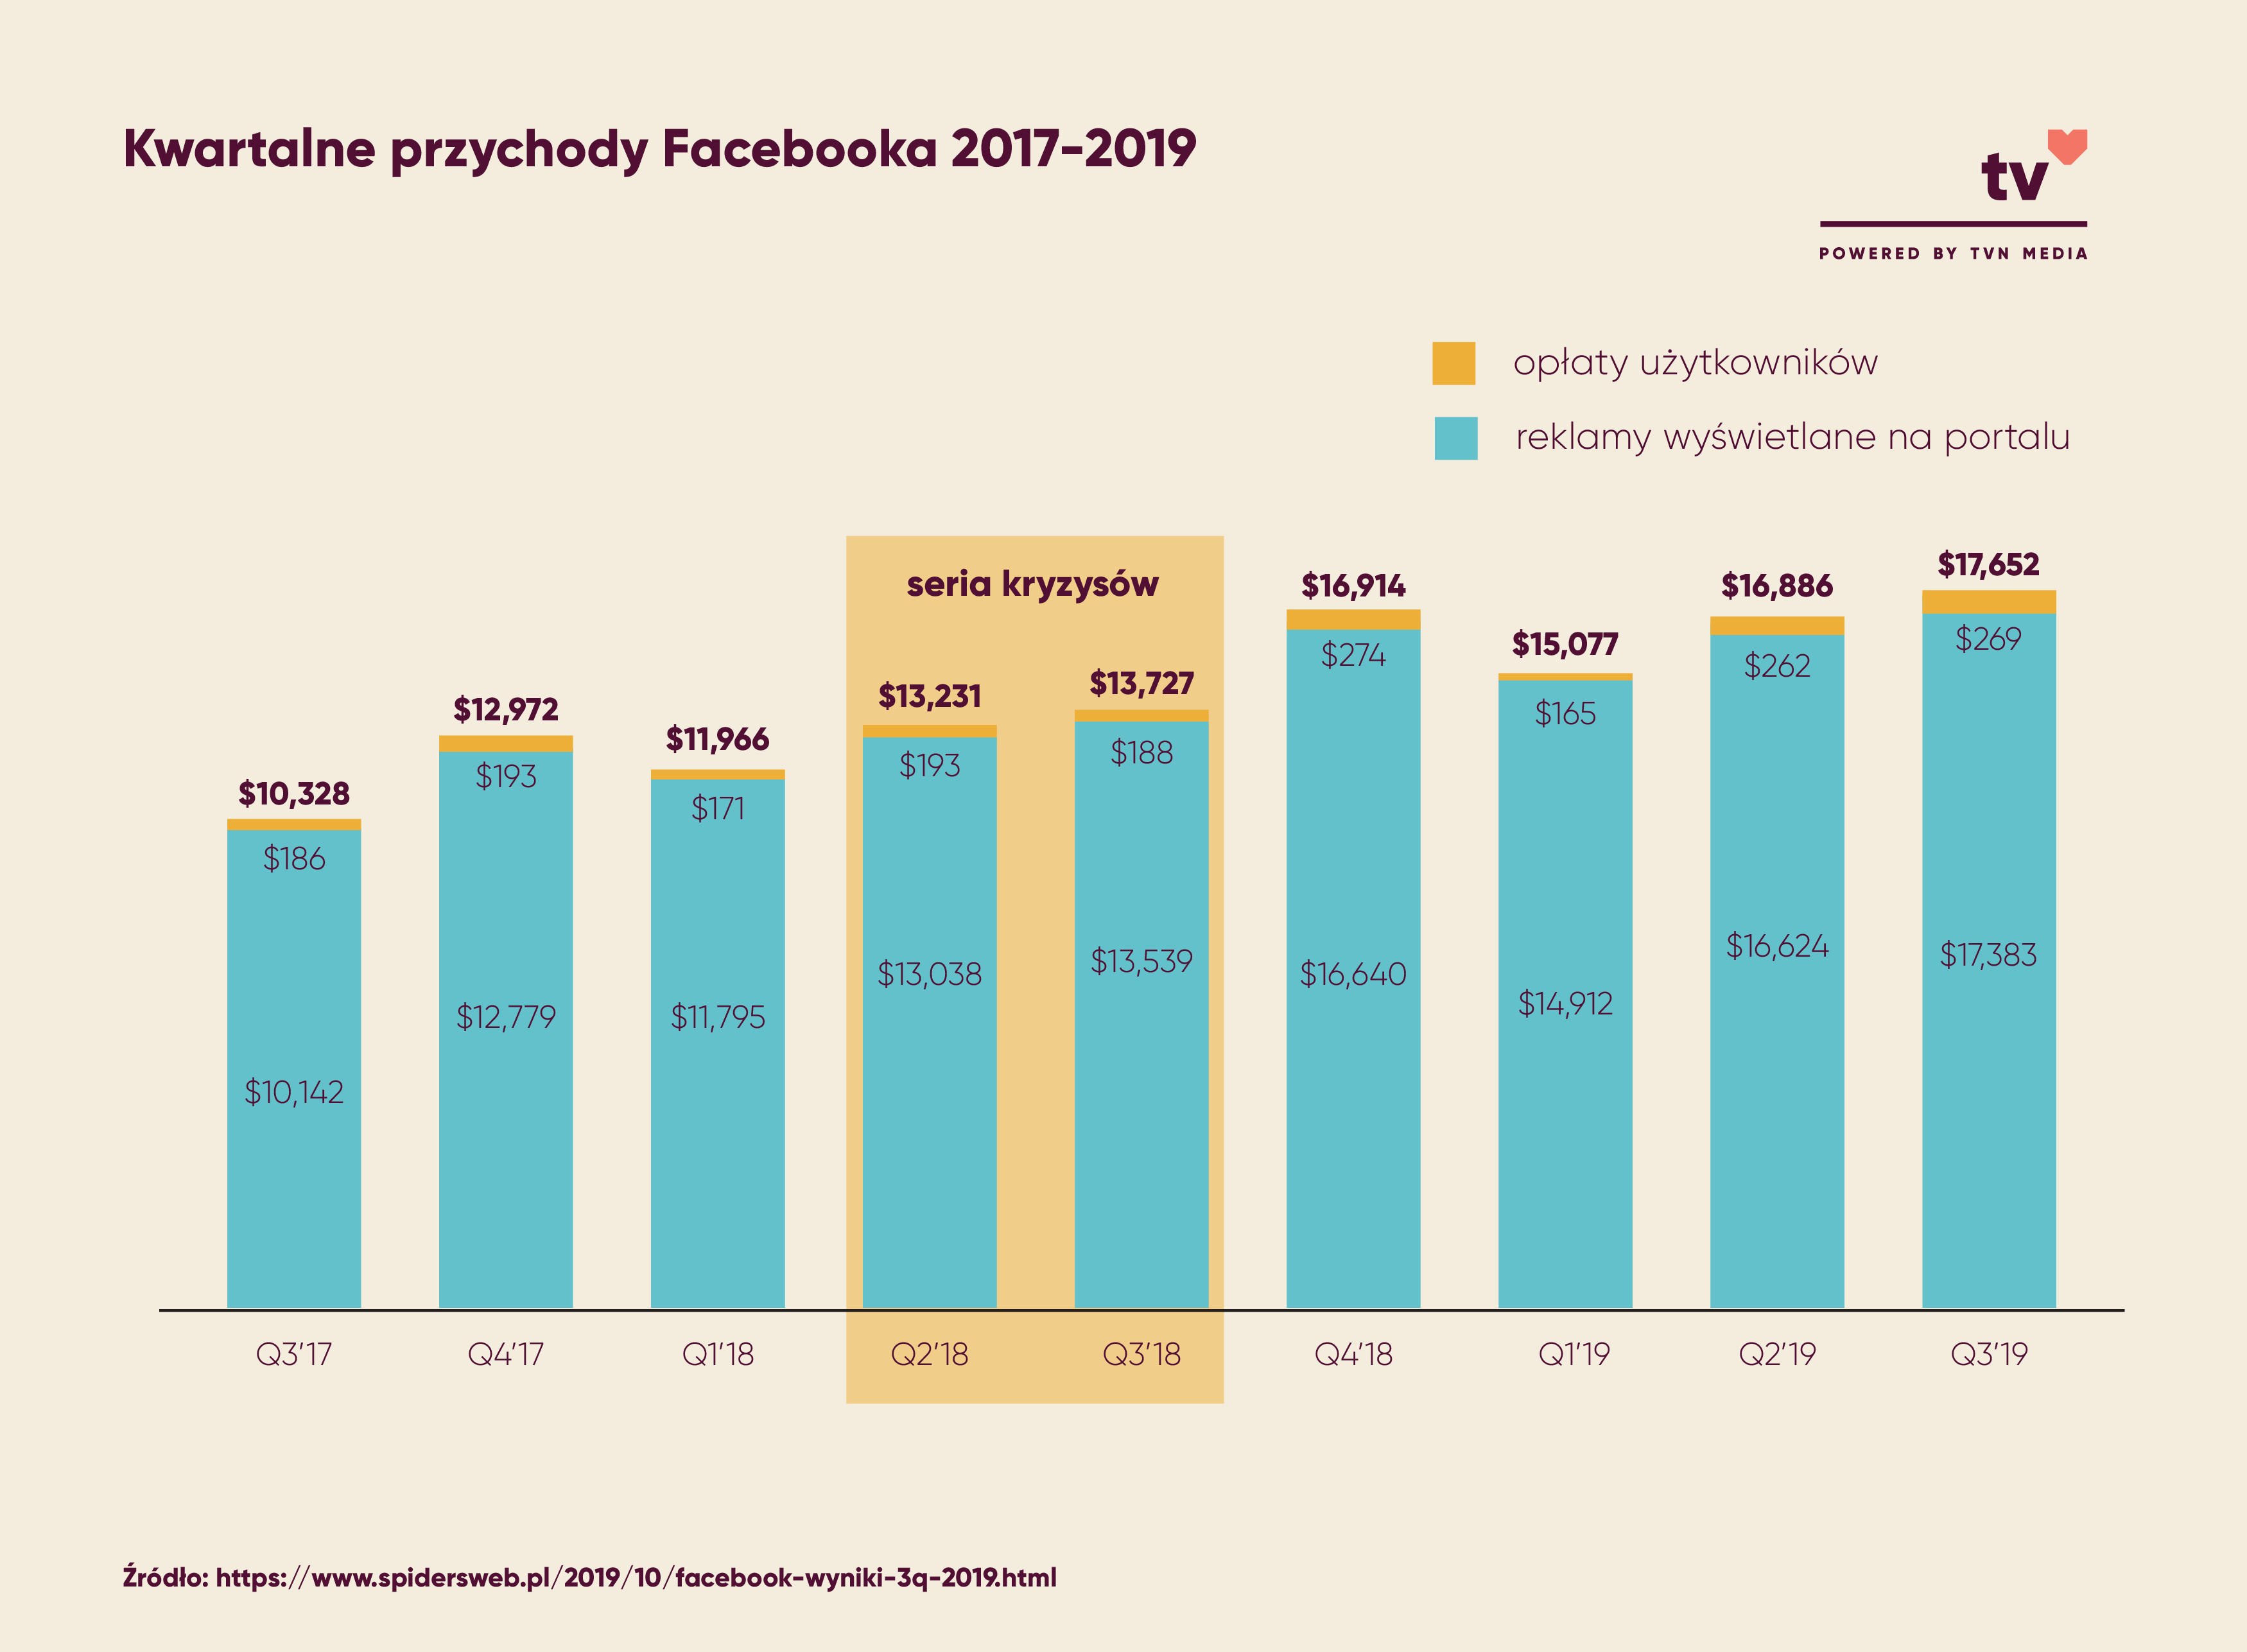 Kwartalne przychody Facebooka 2017-2019